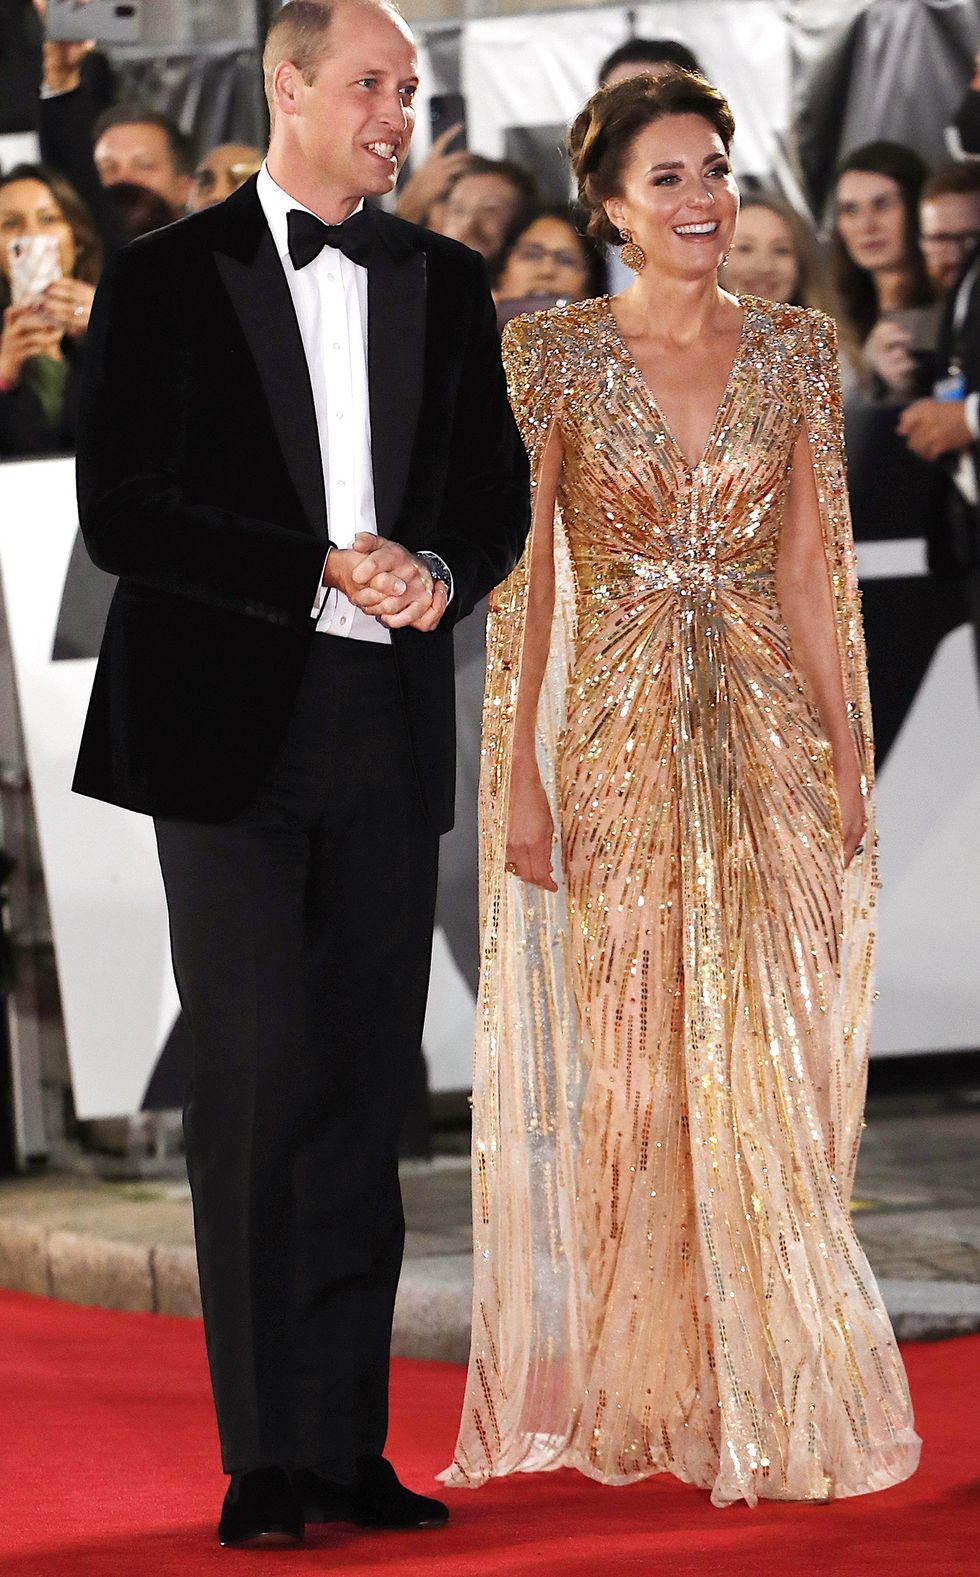 凱特王妃 以金色禮服出席《007生死交戰》 紅毯首映會穿搭